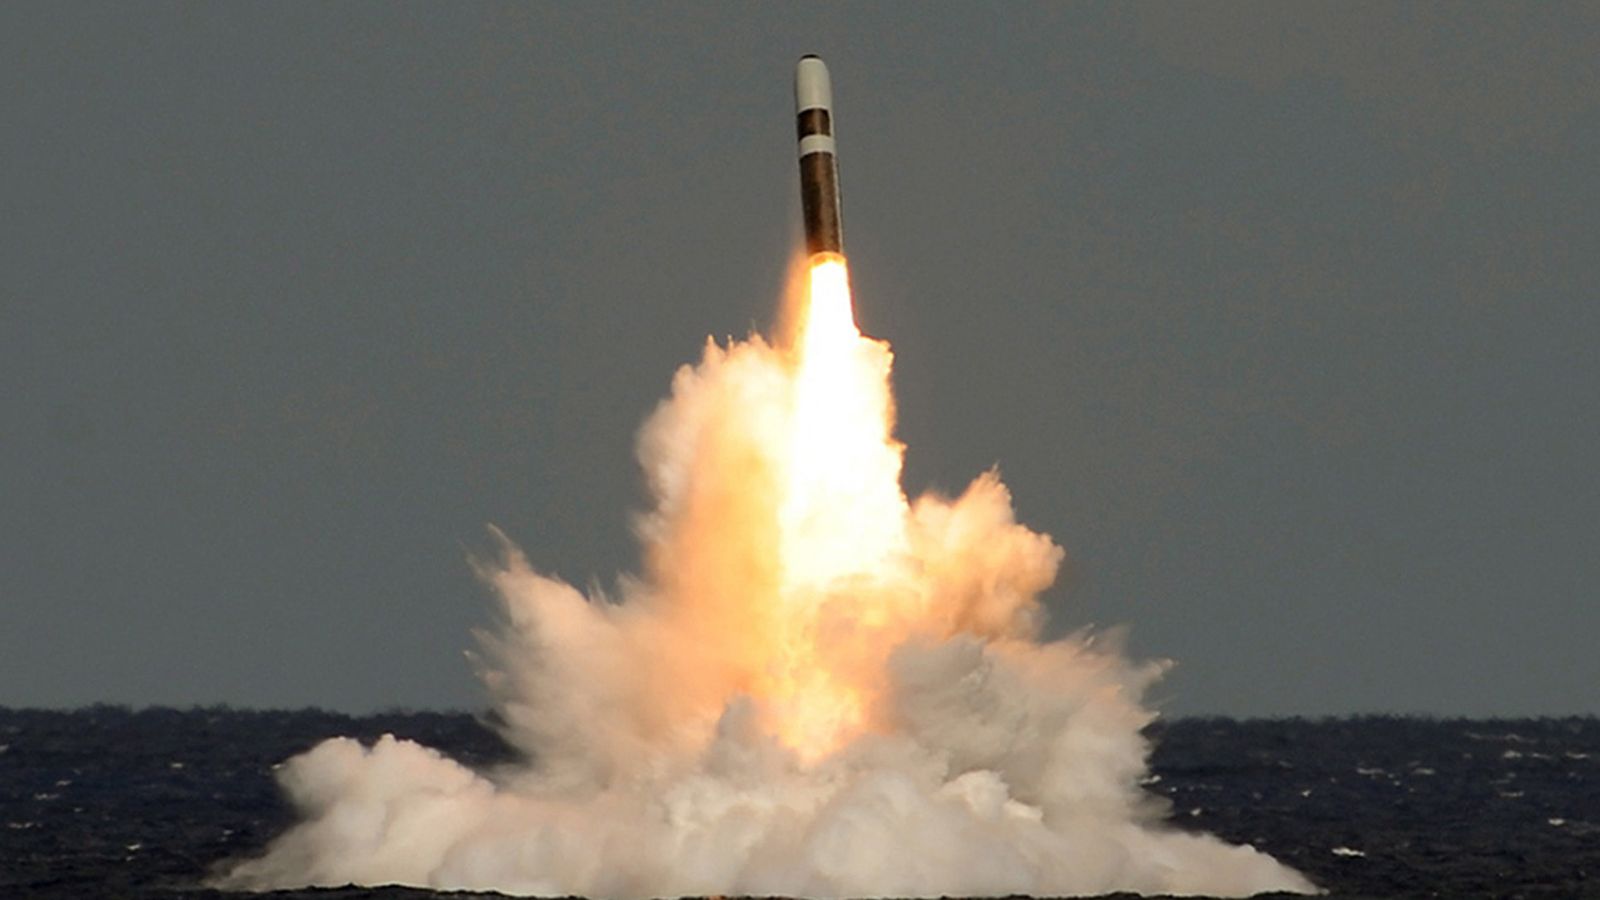 لحظة الاطلاق الفاشل لصاروخ ترايدنت من على غواصة نووية بريطانية 